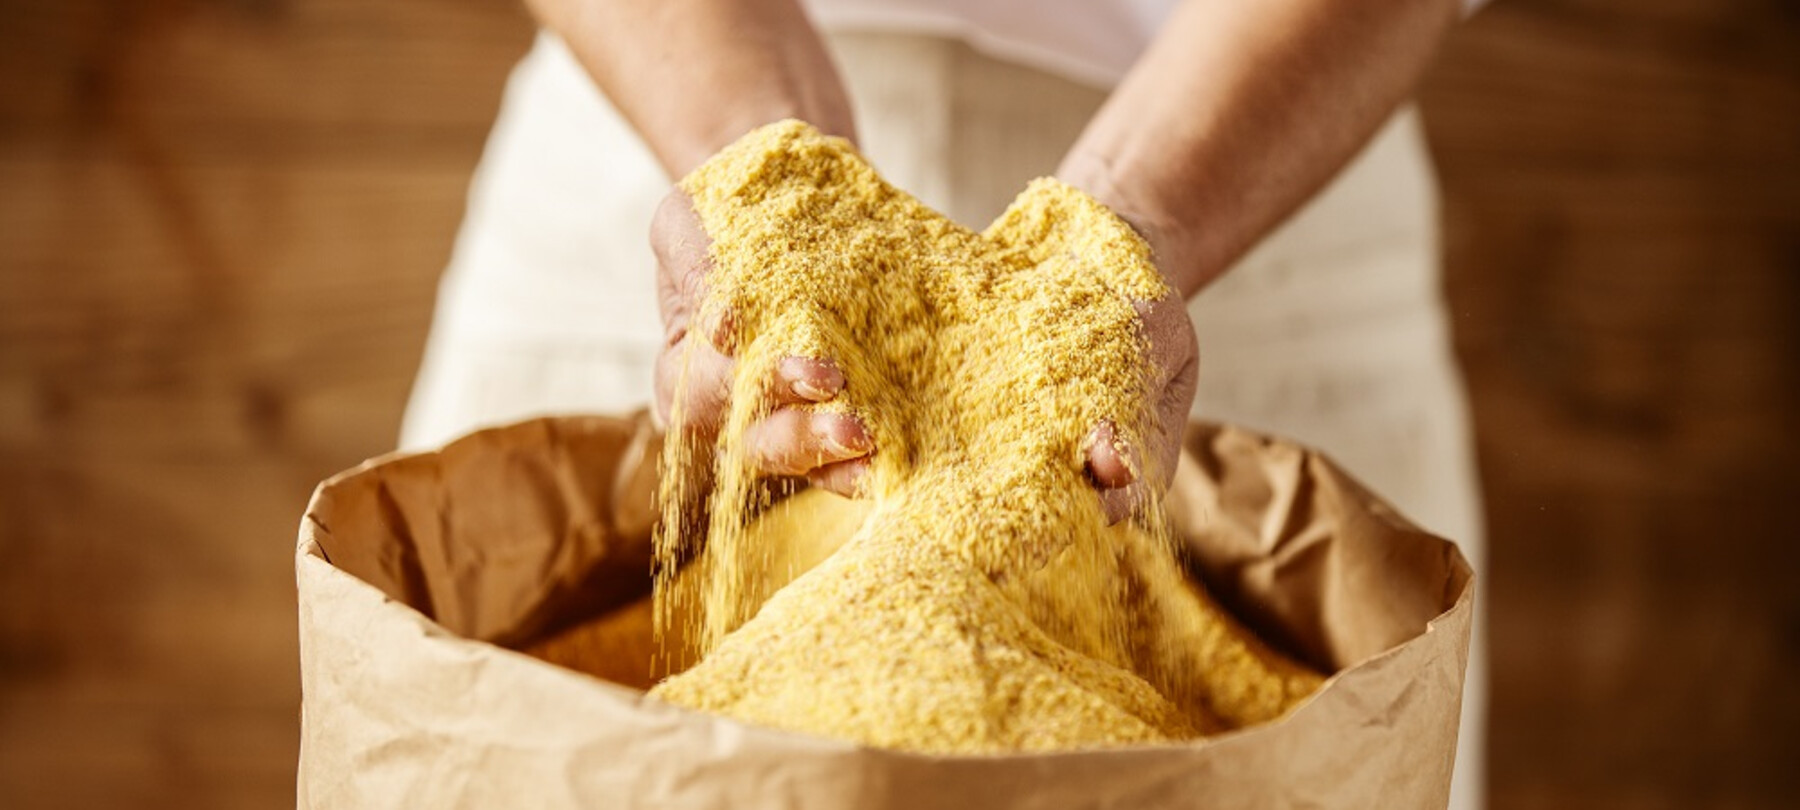 Yellow Storo flour: Trentino’s golden treasure